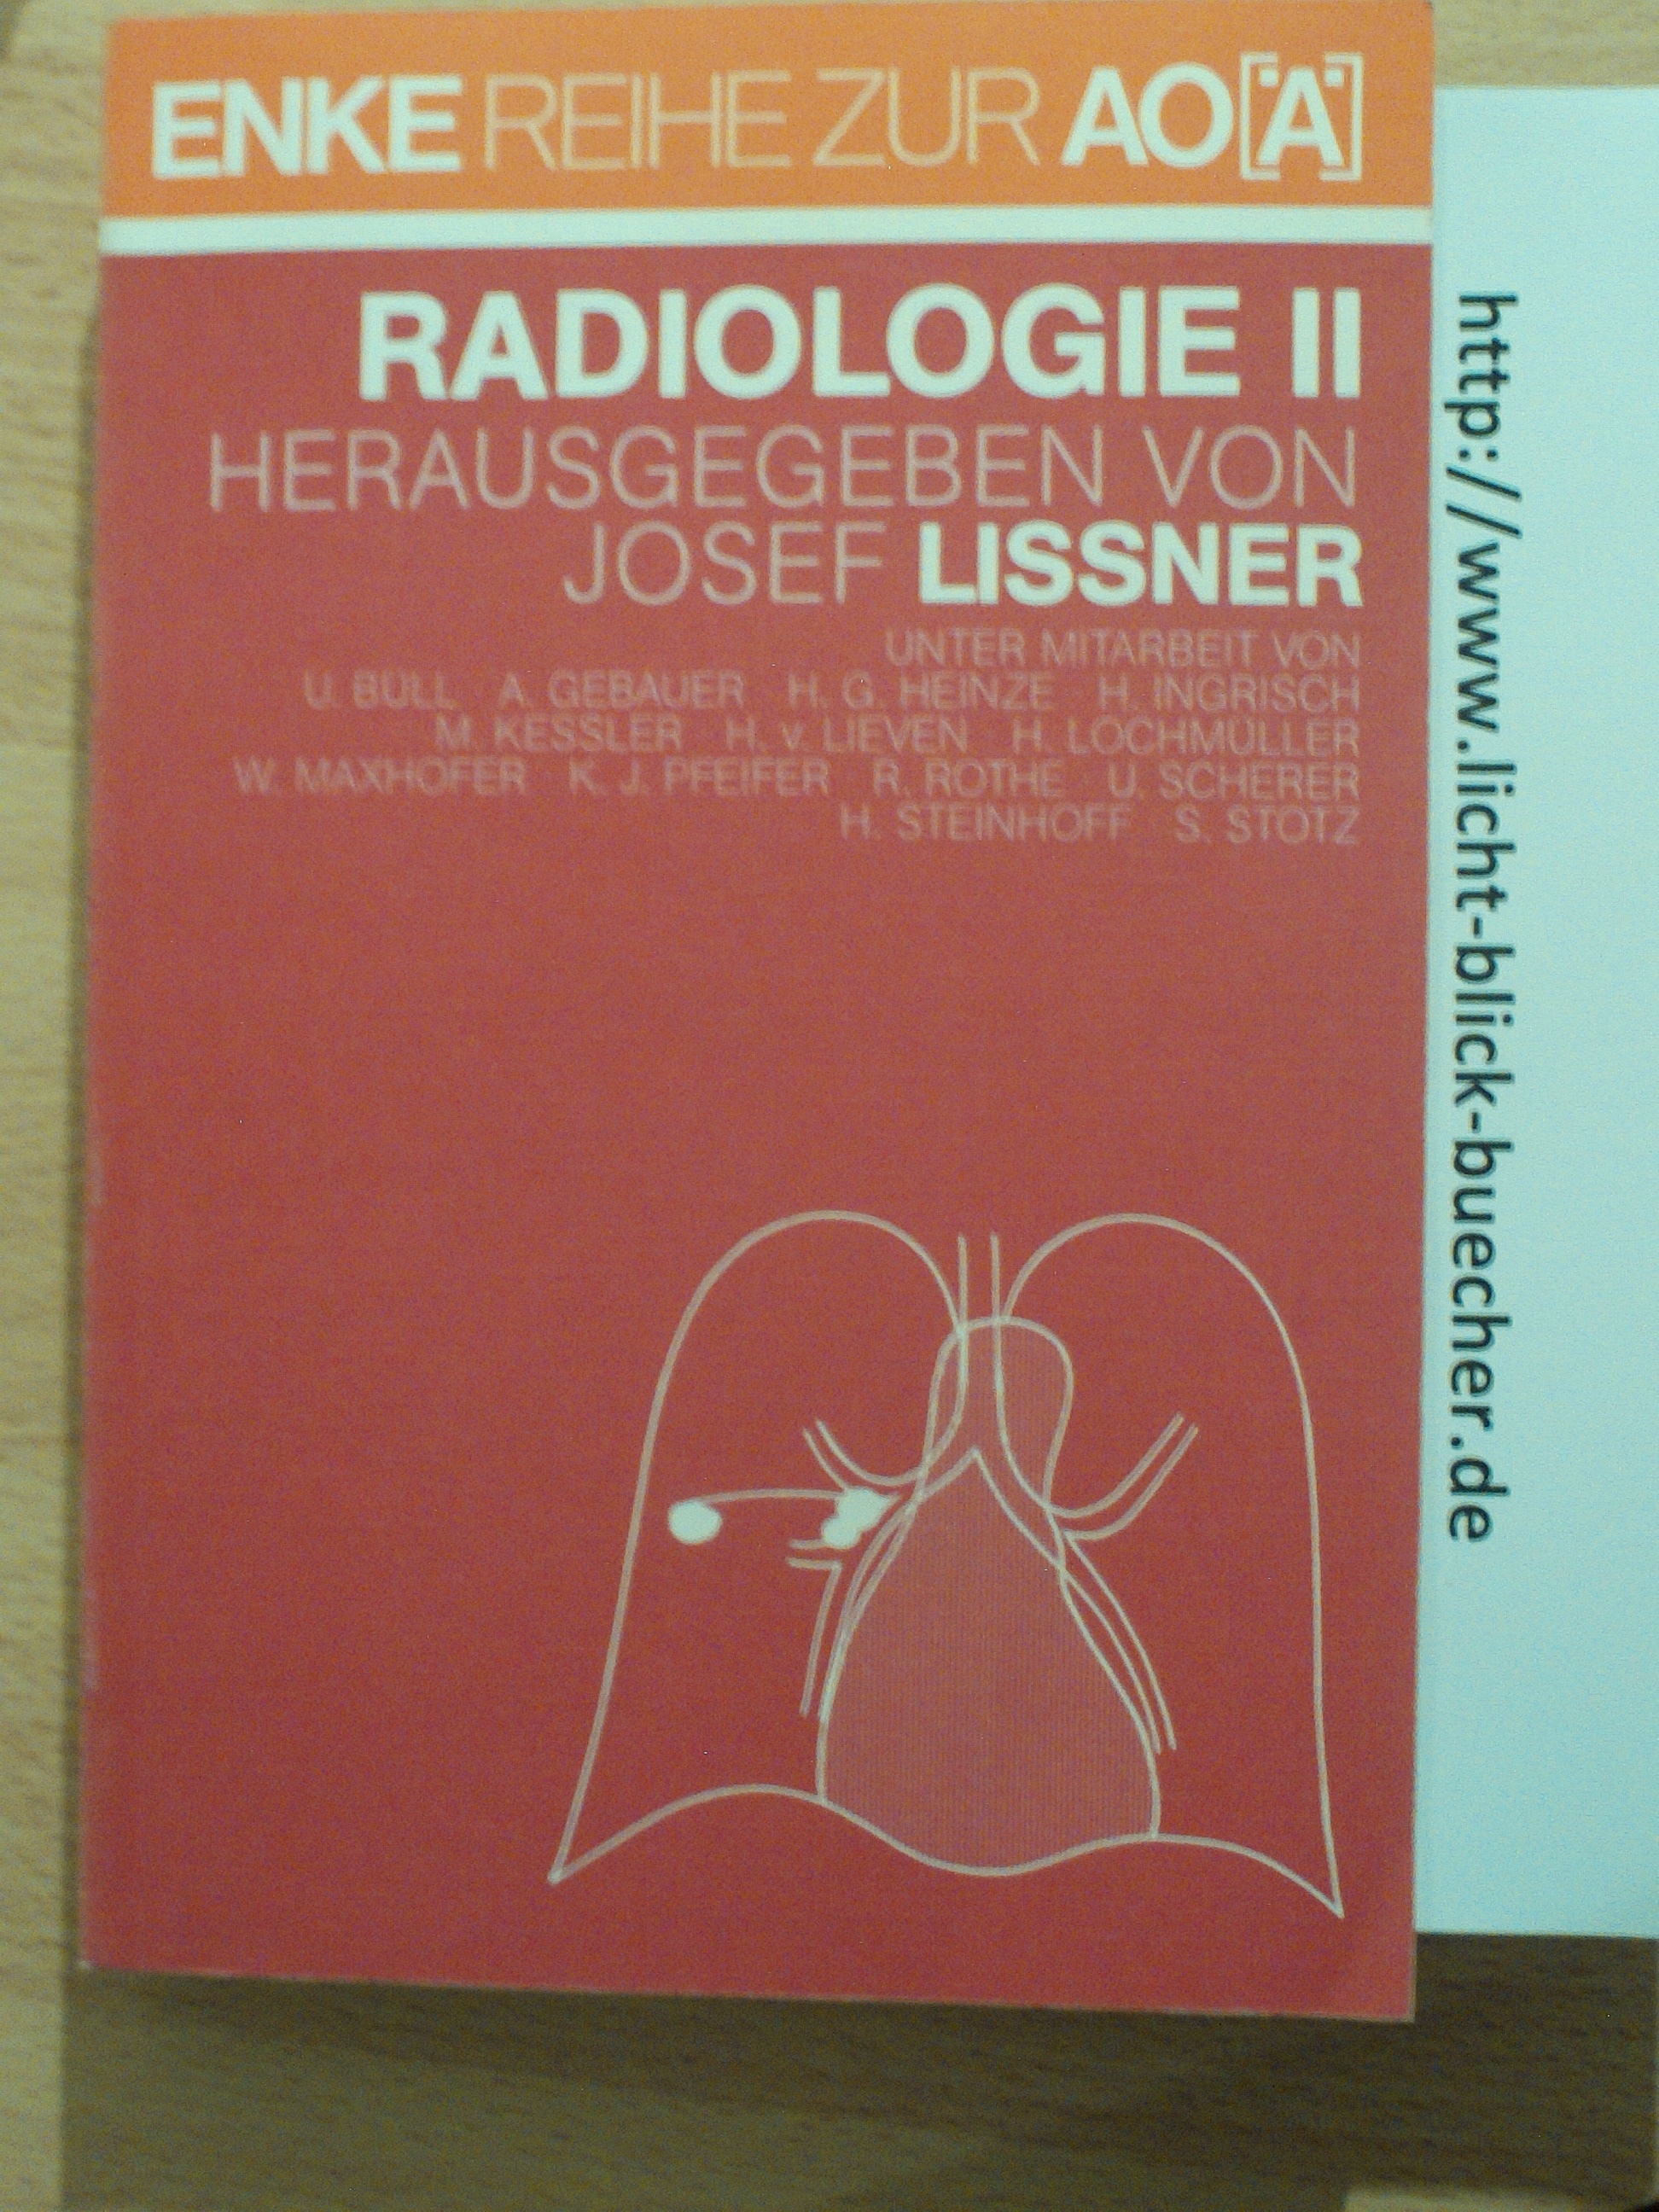 Radiologie IILehrbuch fuer den 2.Abschnitt der aerztlichen Pruefung , das praktische Jahr und die fachaerztliche WeiterbildungLissner Josef ( hrsg )